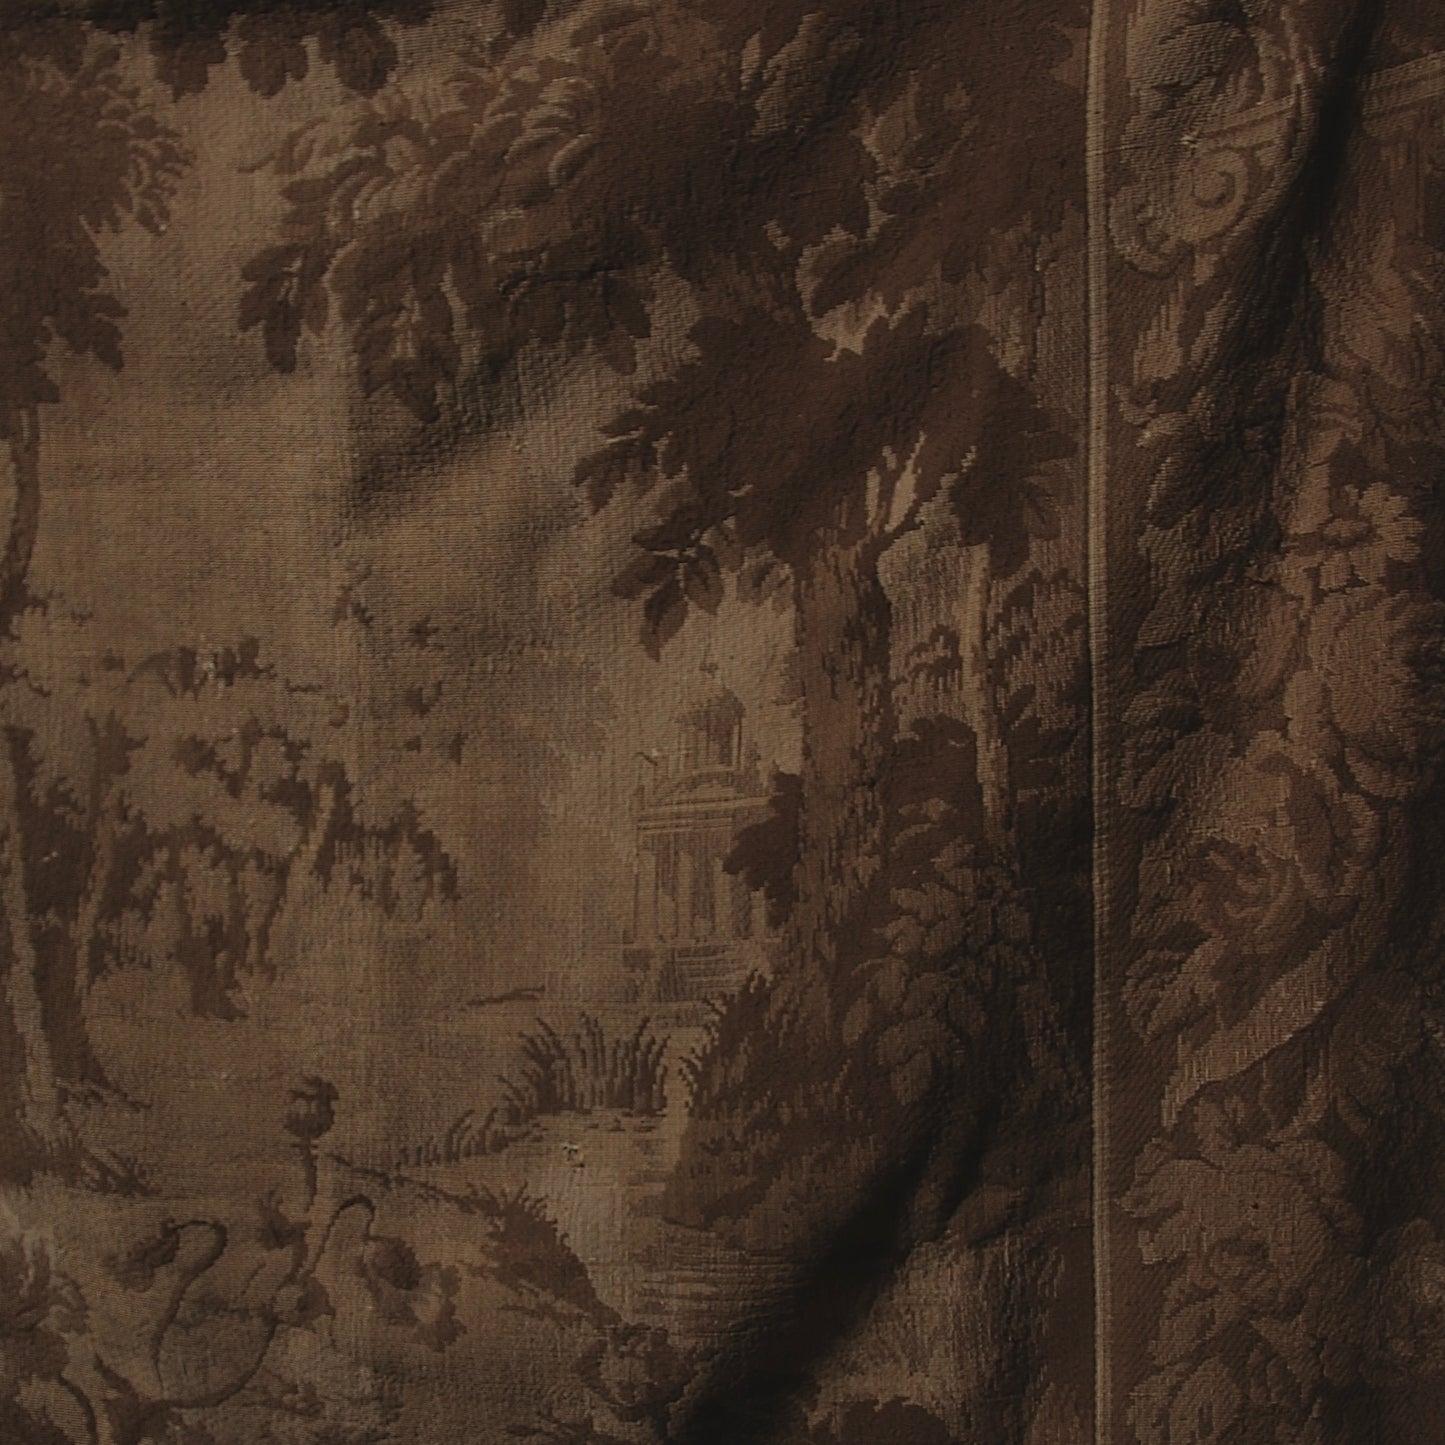 Gobelin Tapestry